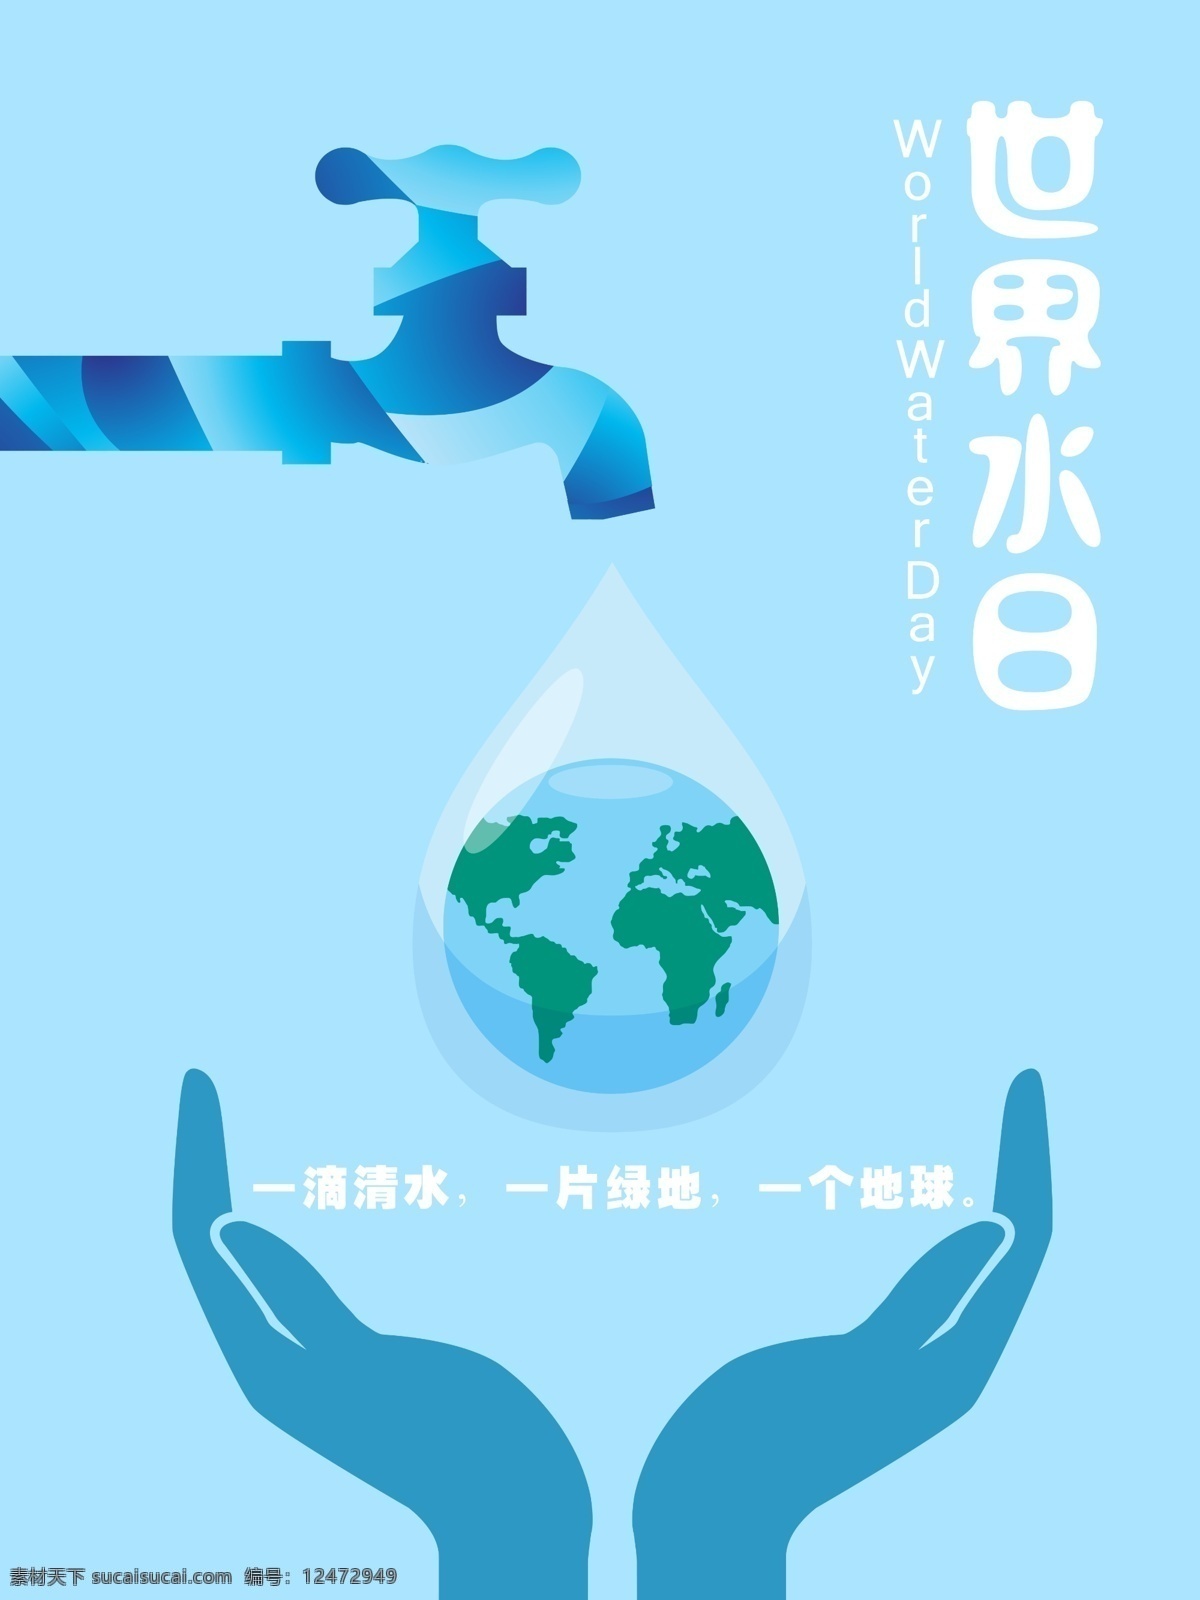 世界 水日 世界水日 公益 海报 水滴 地球 环保 节约用水